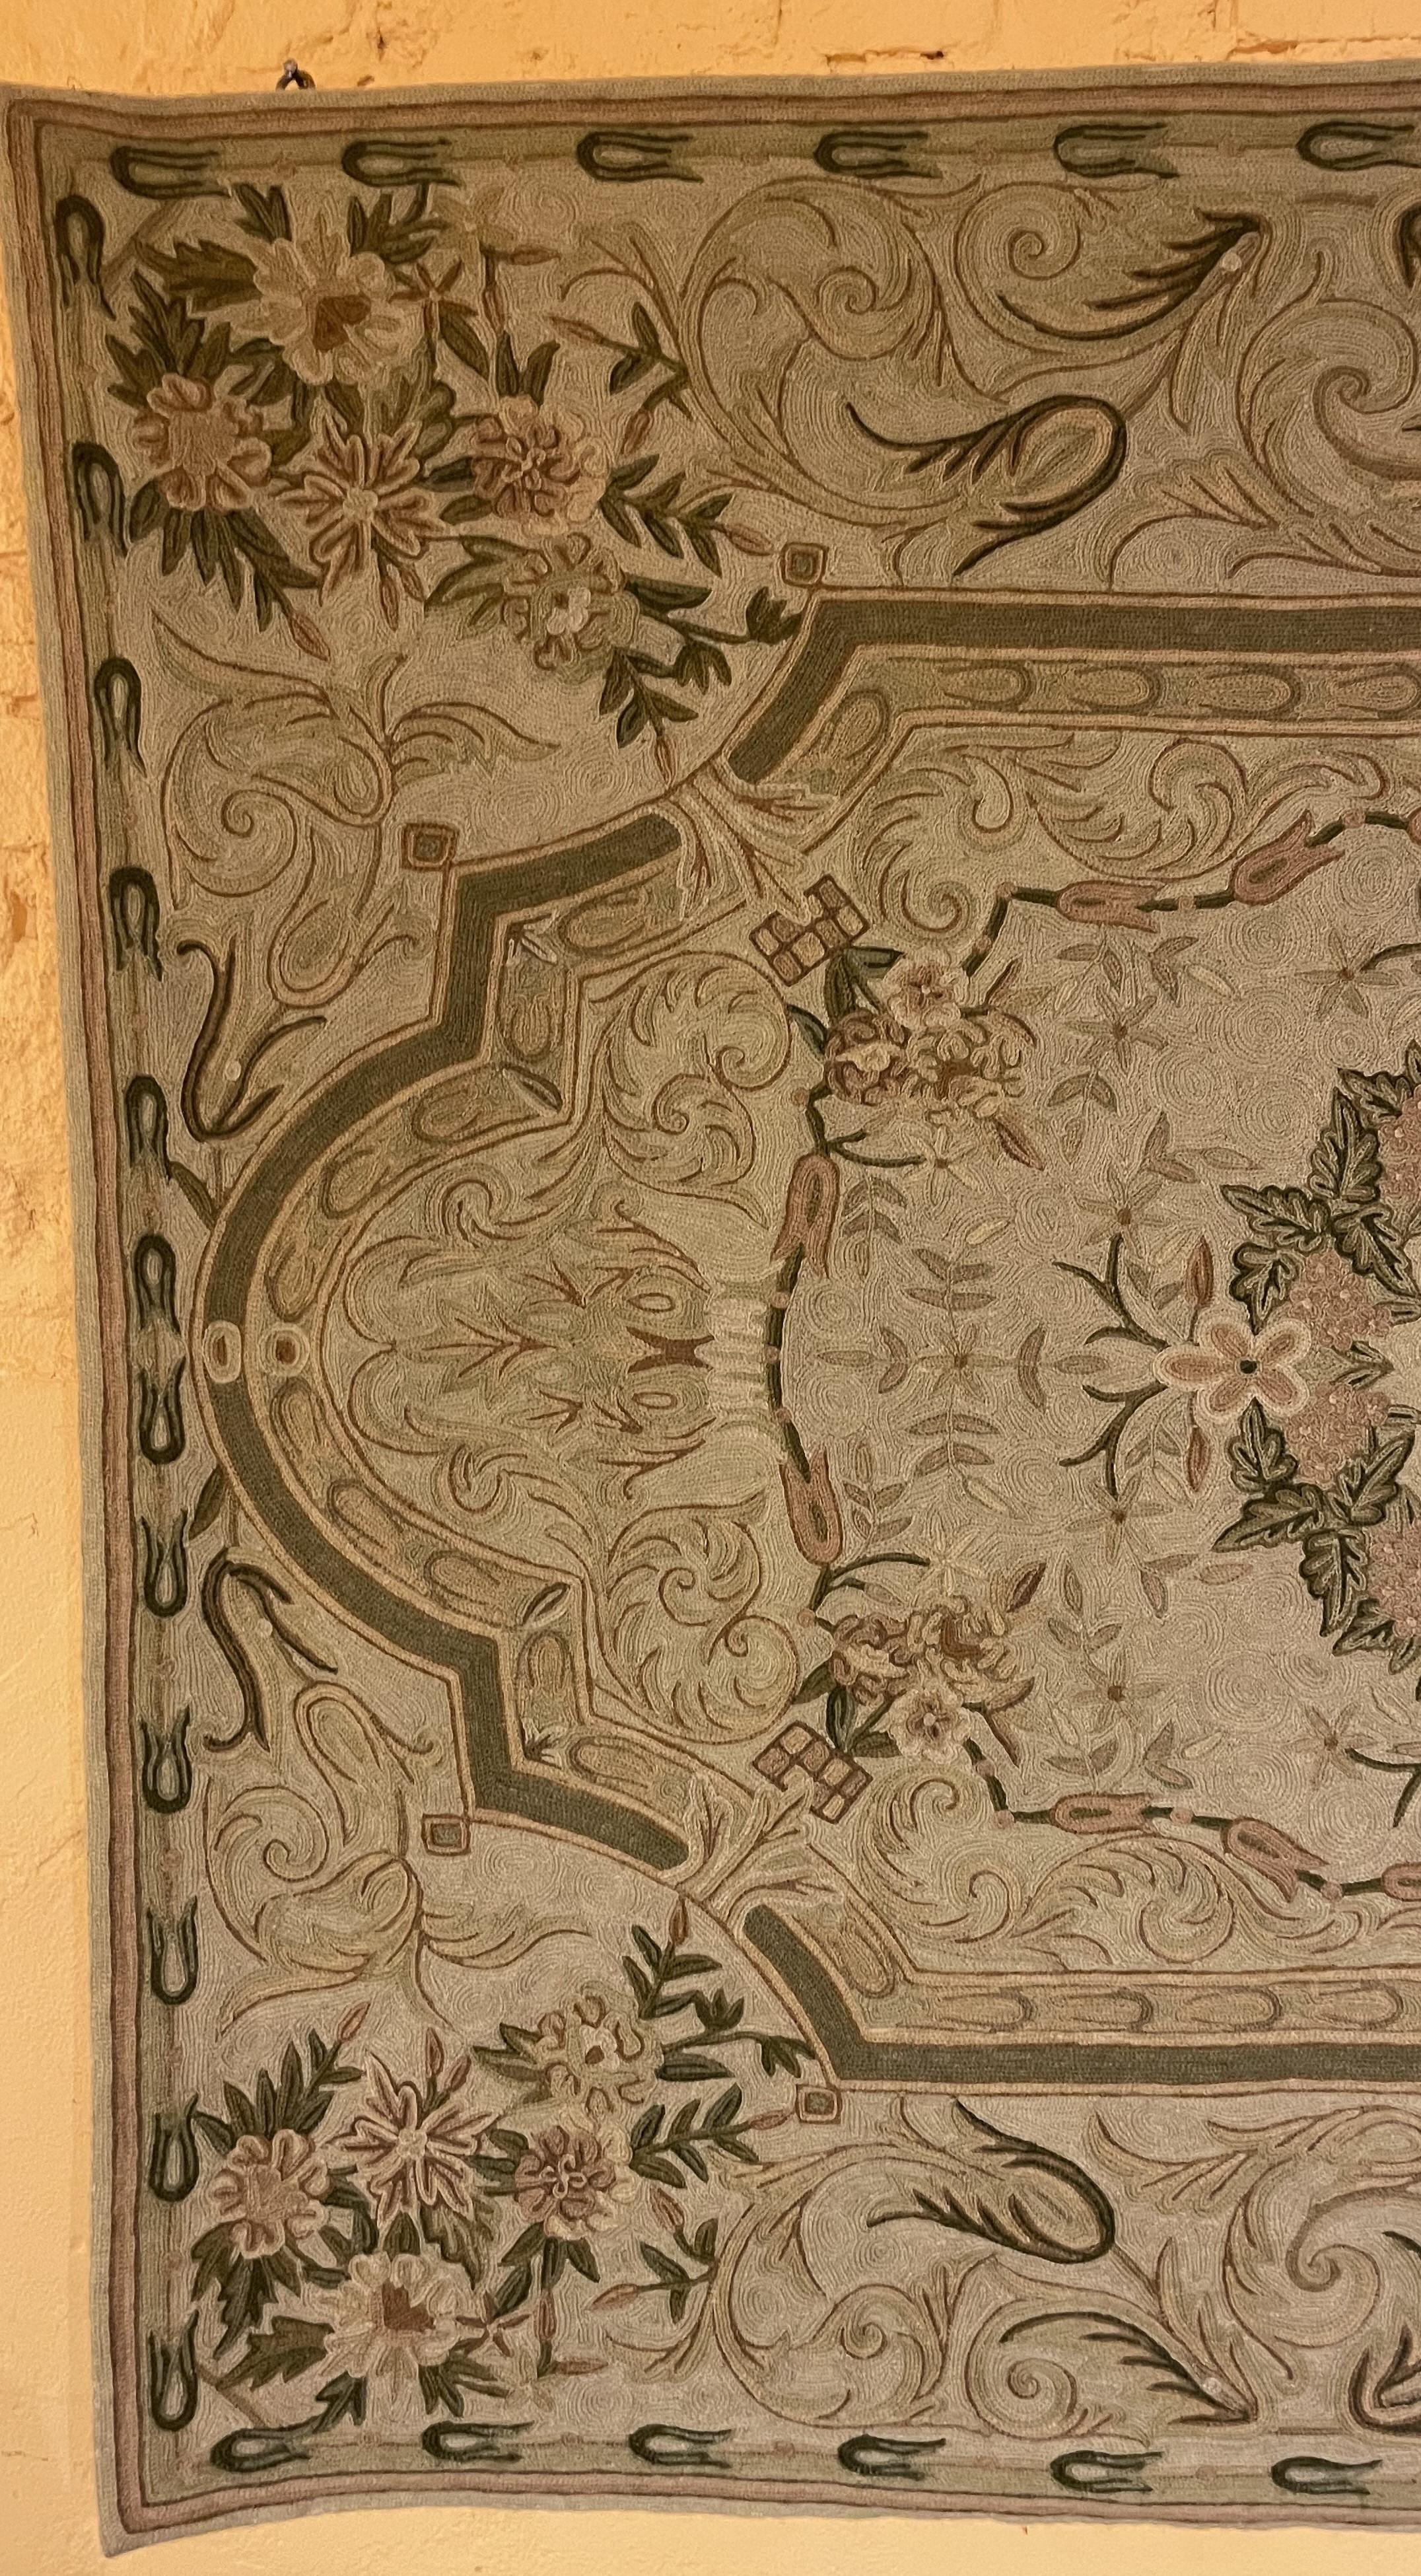 Portugiesische Grenze aus dem 19. Jahrhundert
Hübsche Stickerei mit Blumen und Blumensträußen und geometrischen Formen
Sehr schöne handgefertigte Arbeit
Es wurde ausgekleidet

Schöne Farben und in hervorragendem Zustand